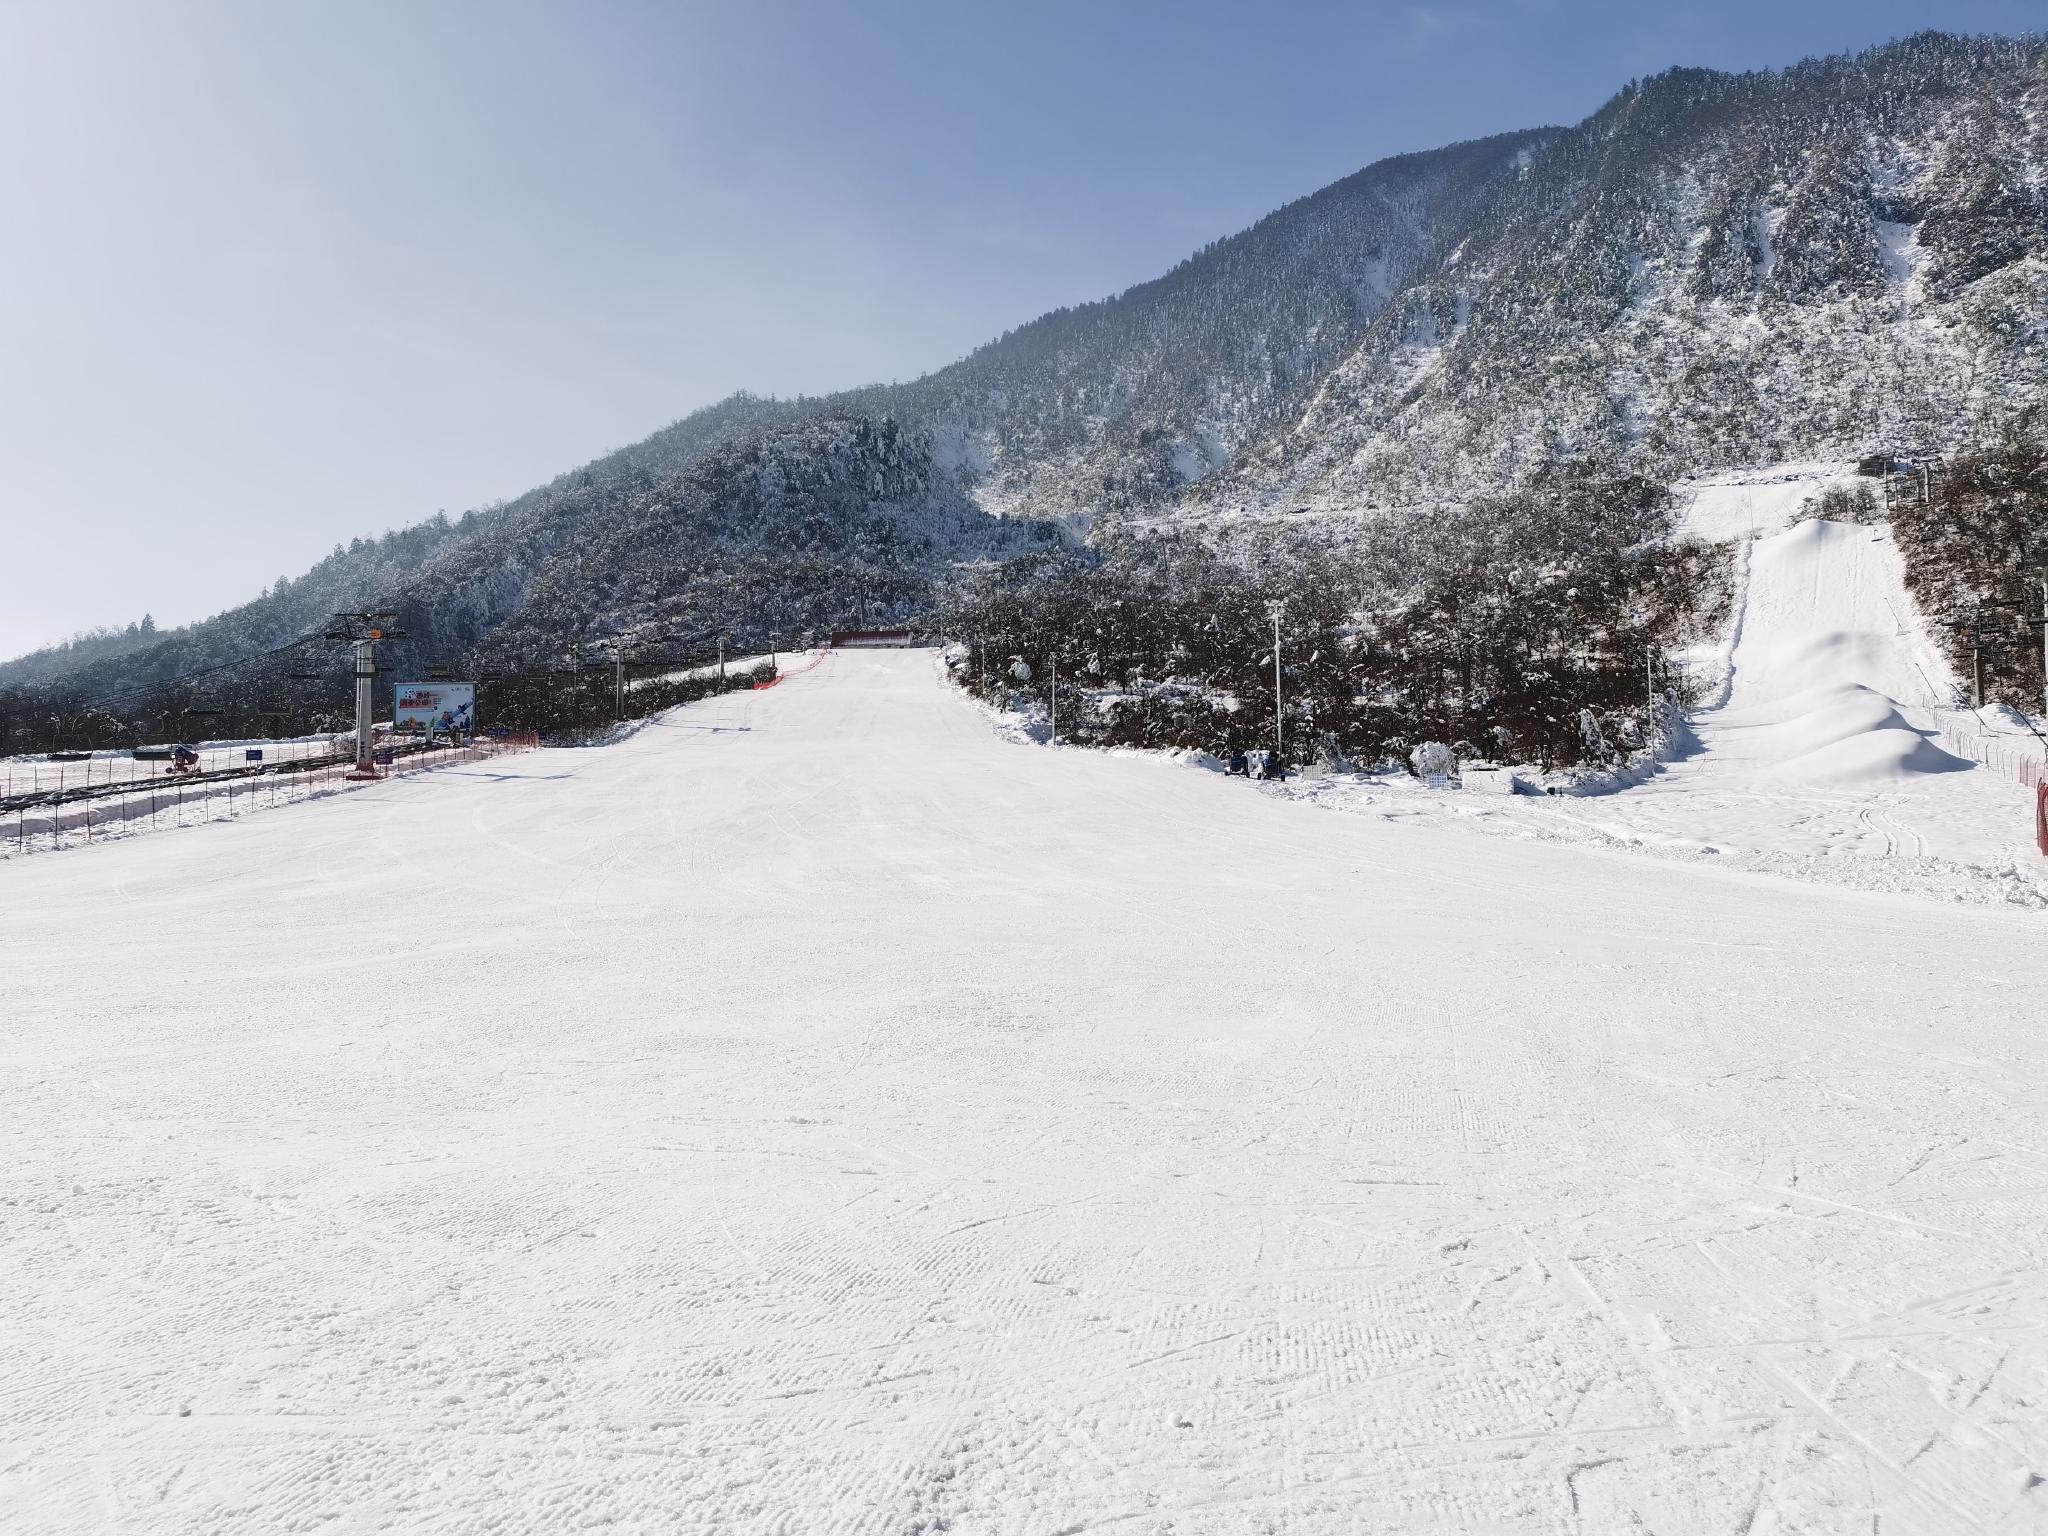 西岭雪山滑雪场雪道图片